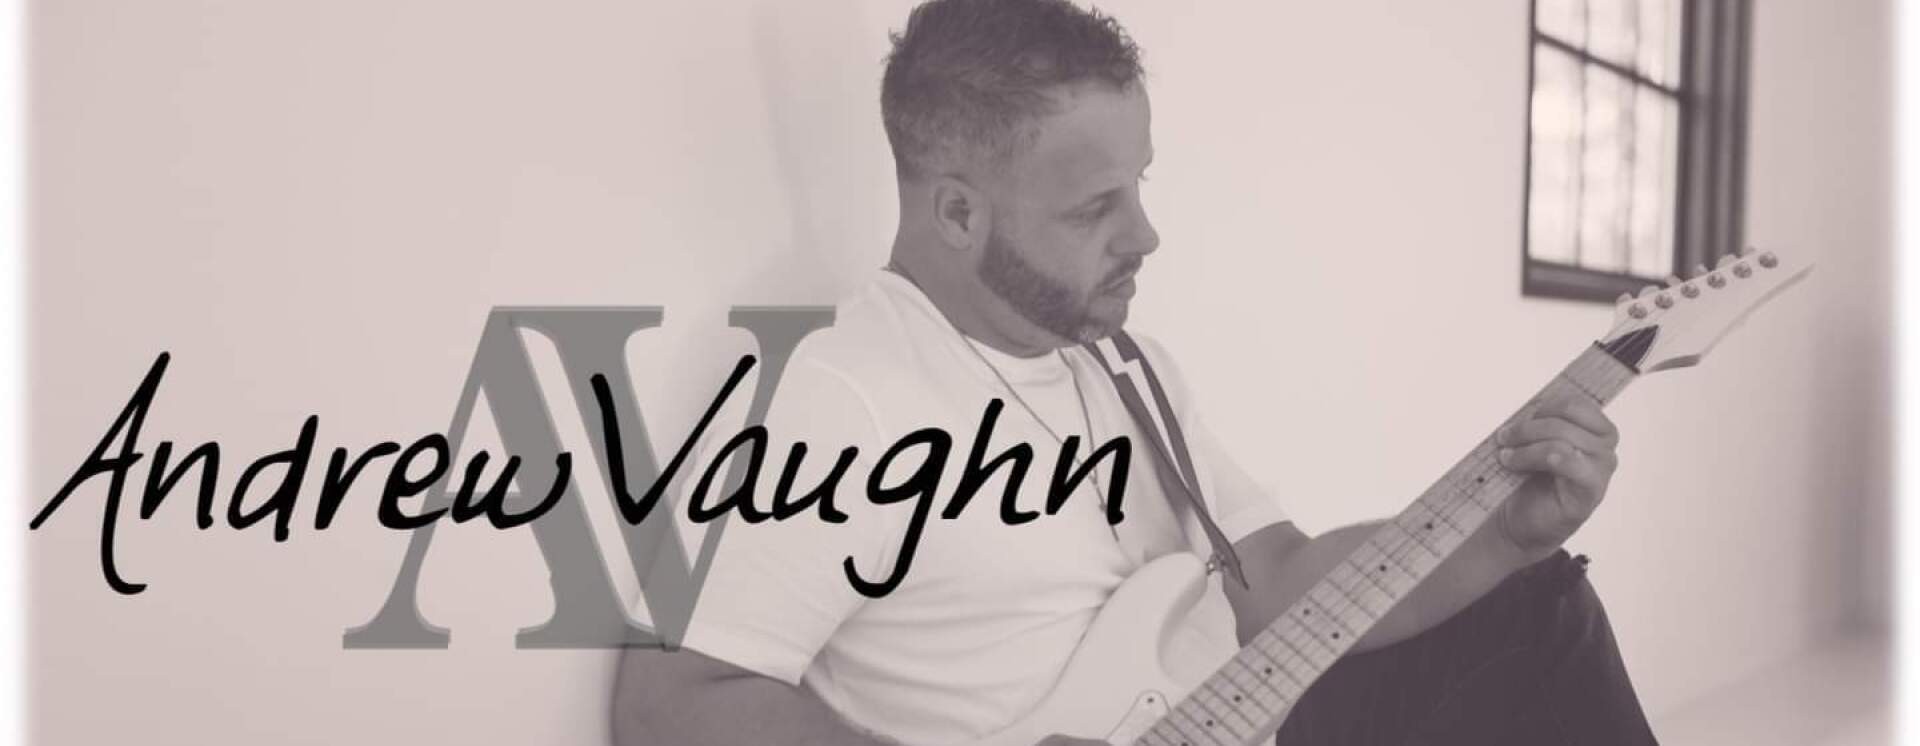 Andrew Vaughn Music Videos